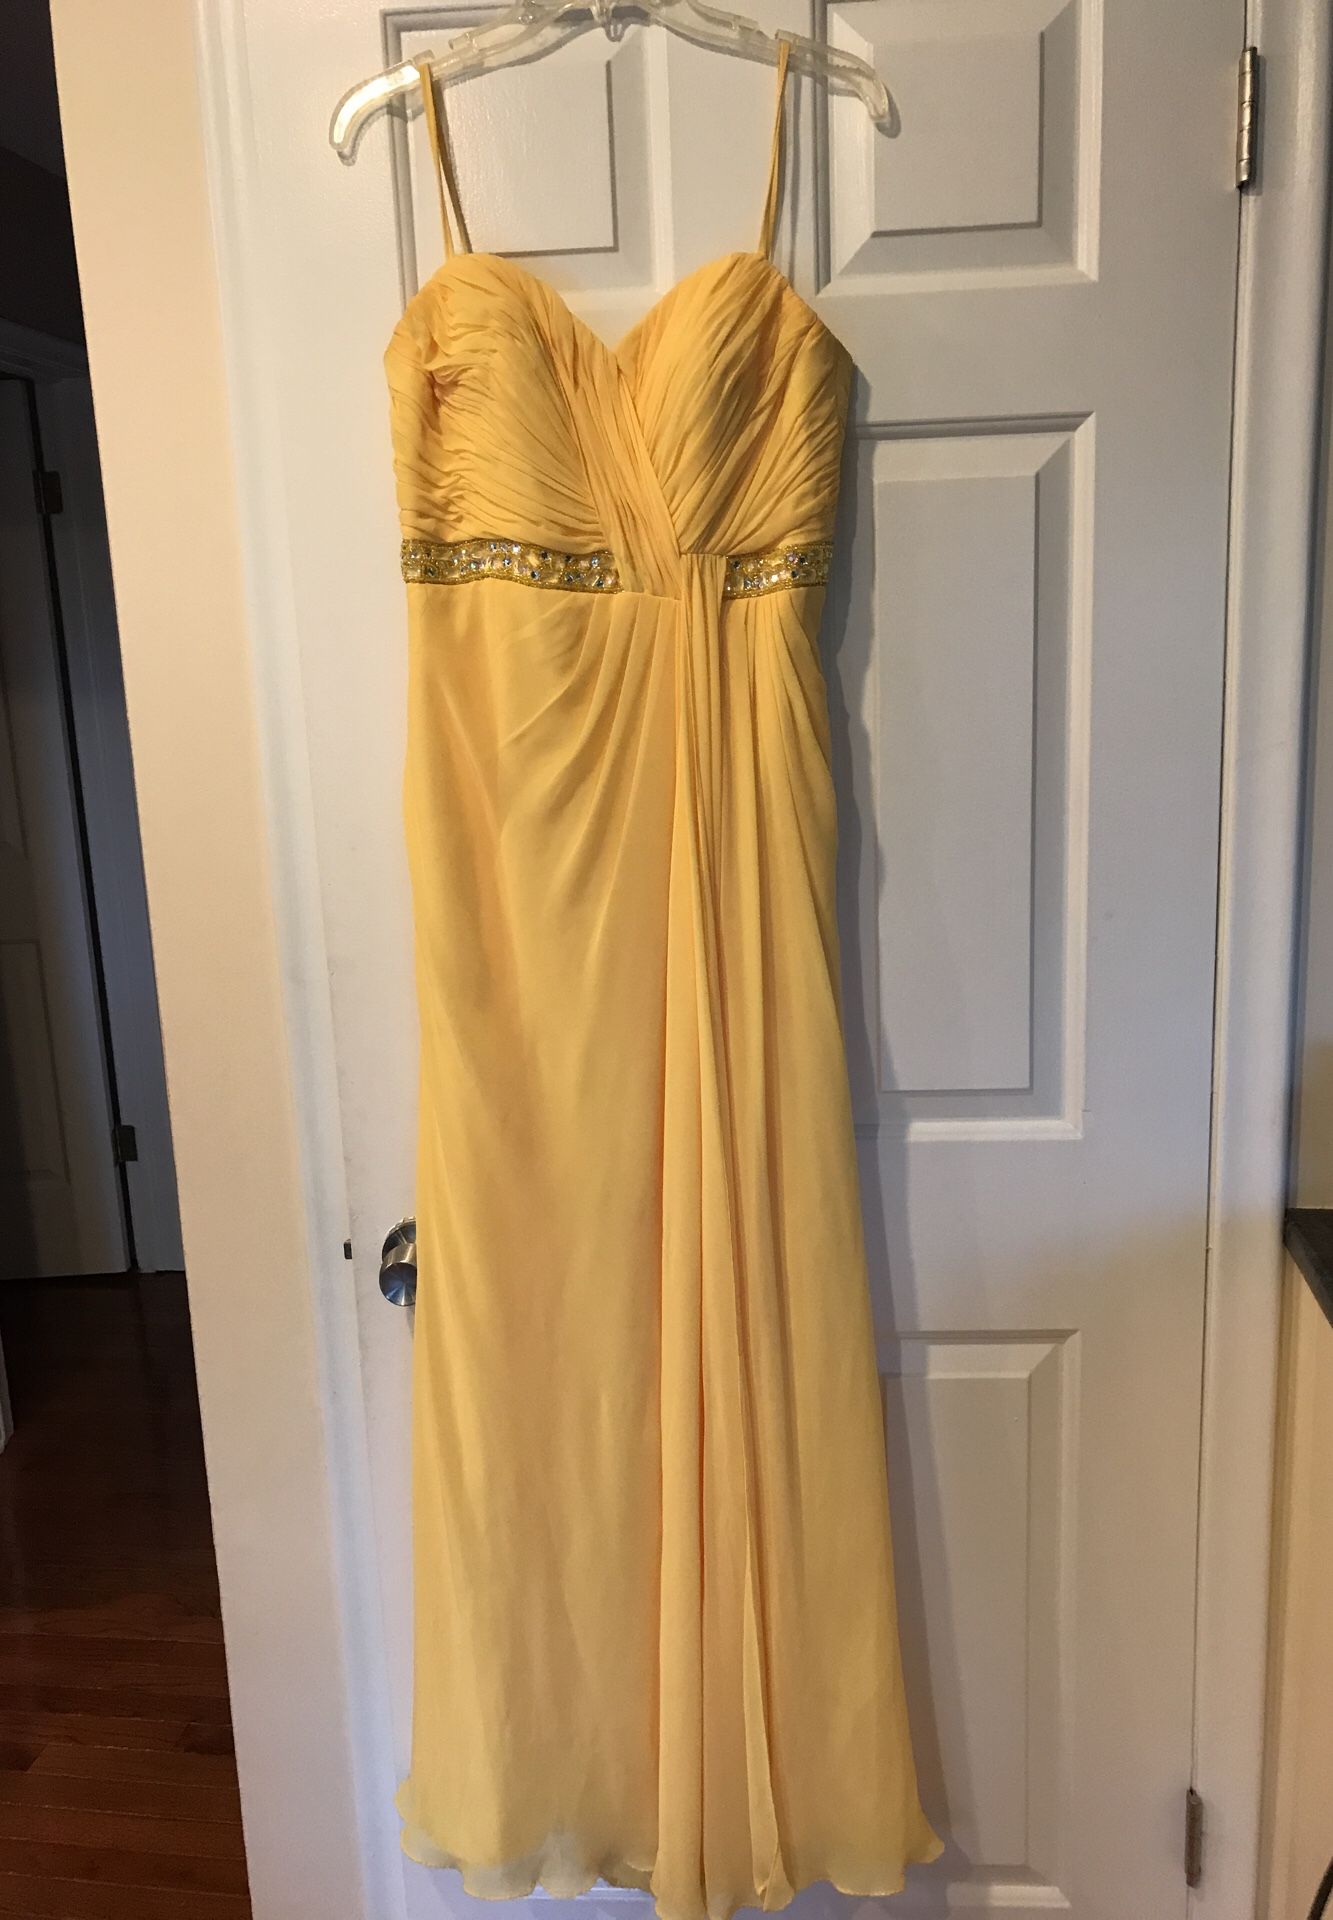 yellow dress size 8/9